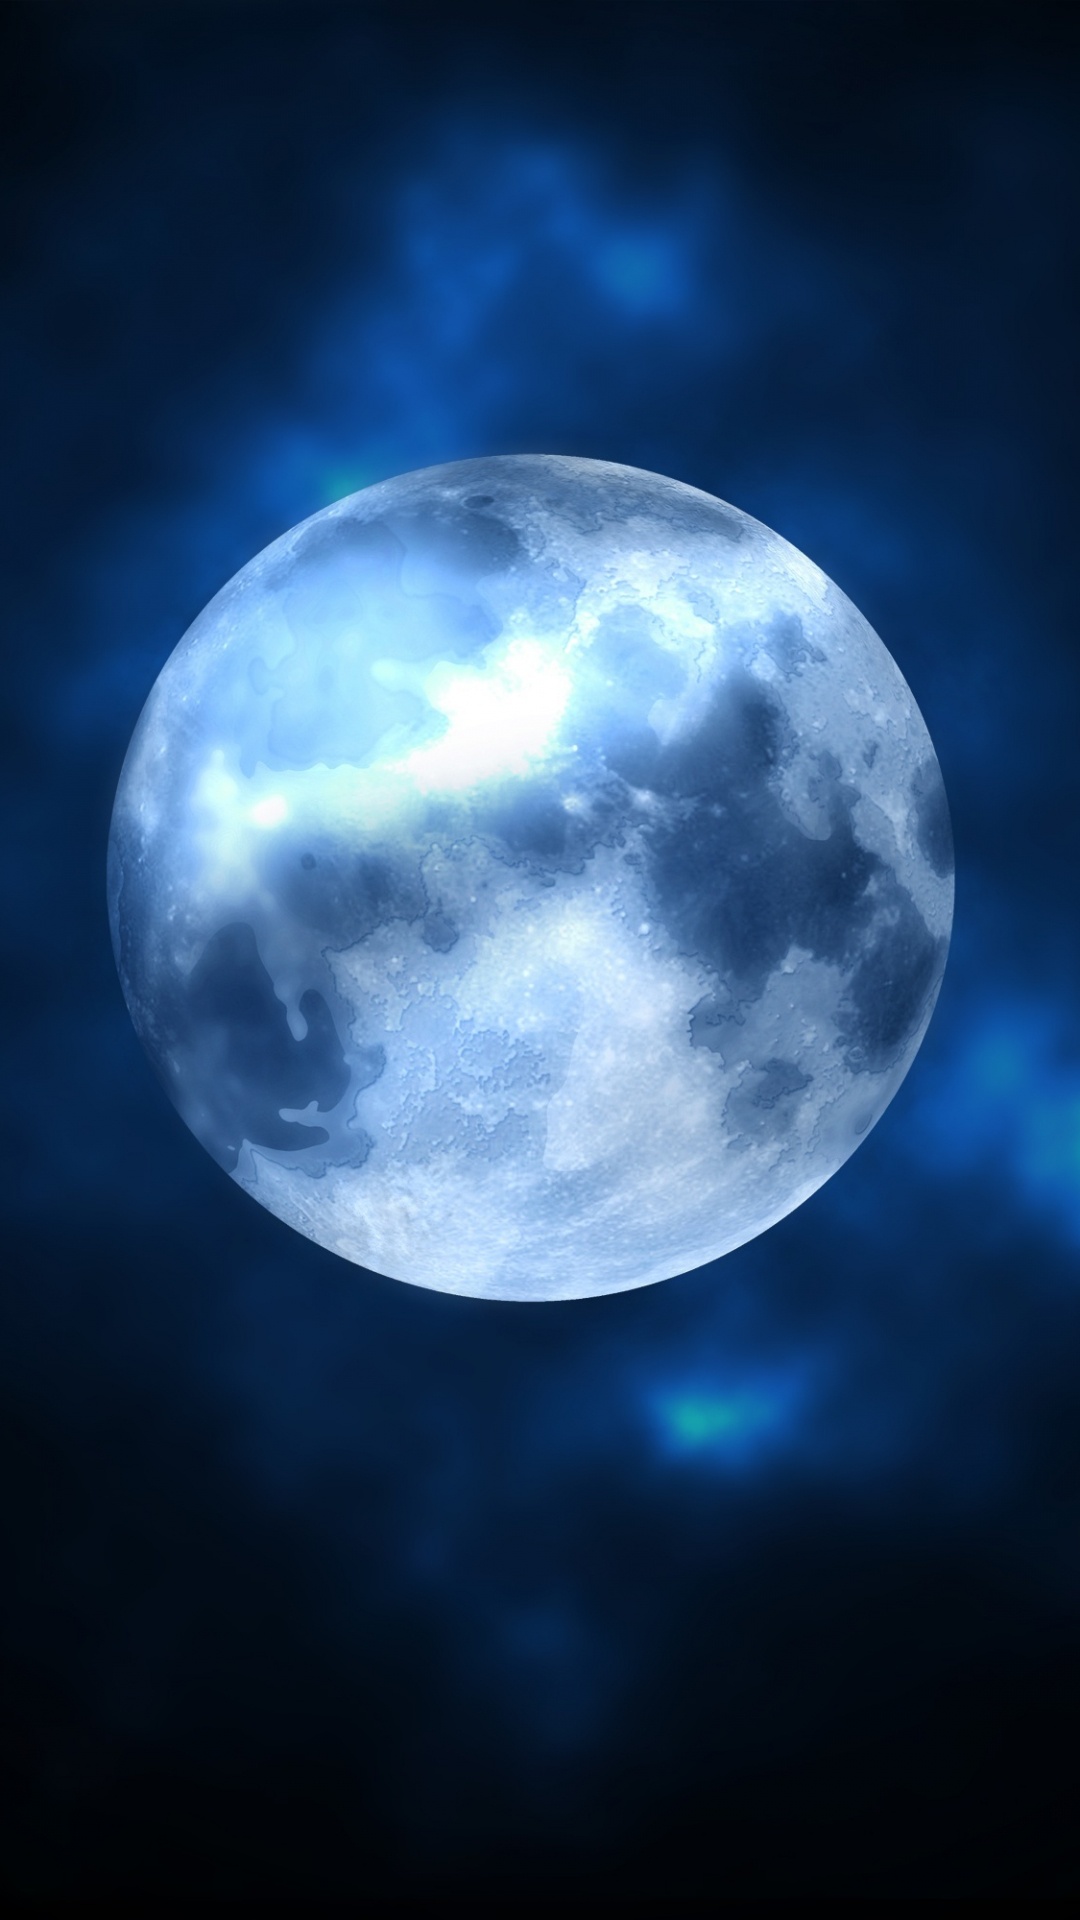 月亮, 性质, 气氛, 满月, 天文学对象 壁纸 1080x1920 允许